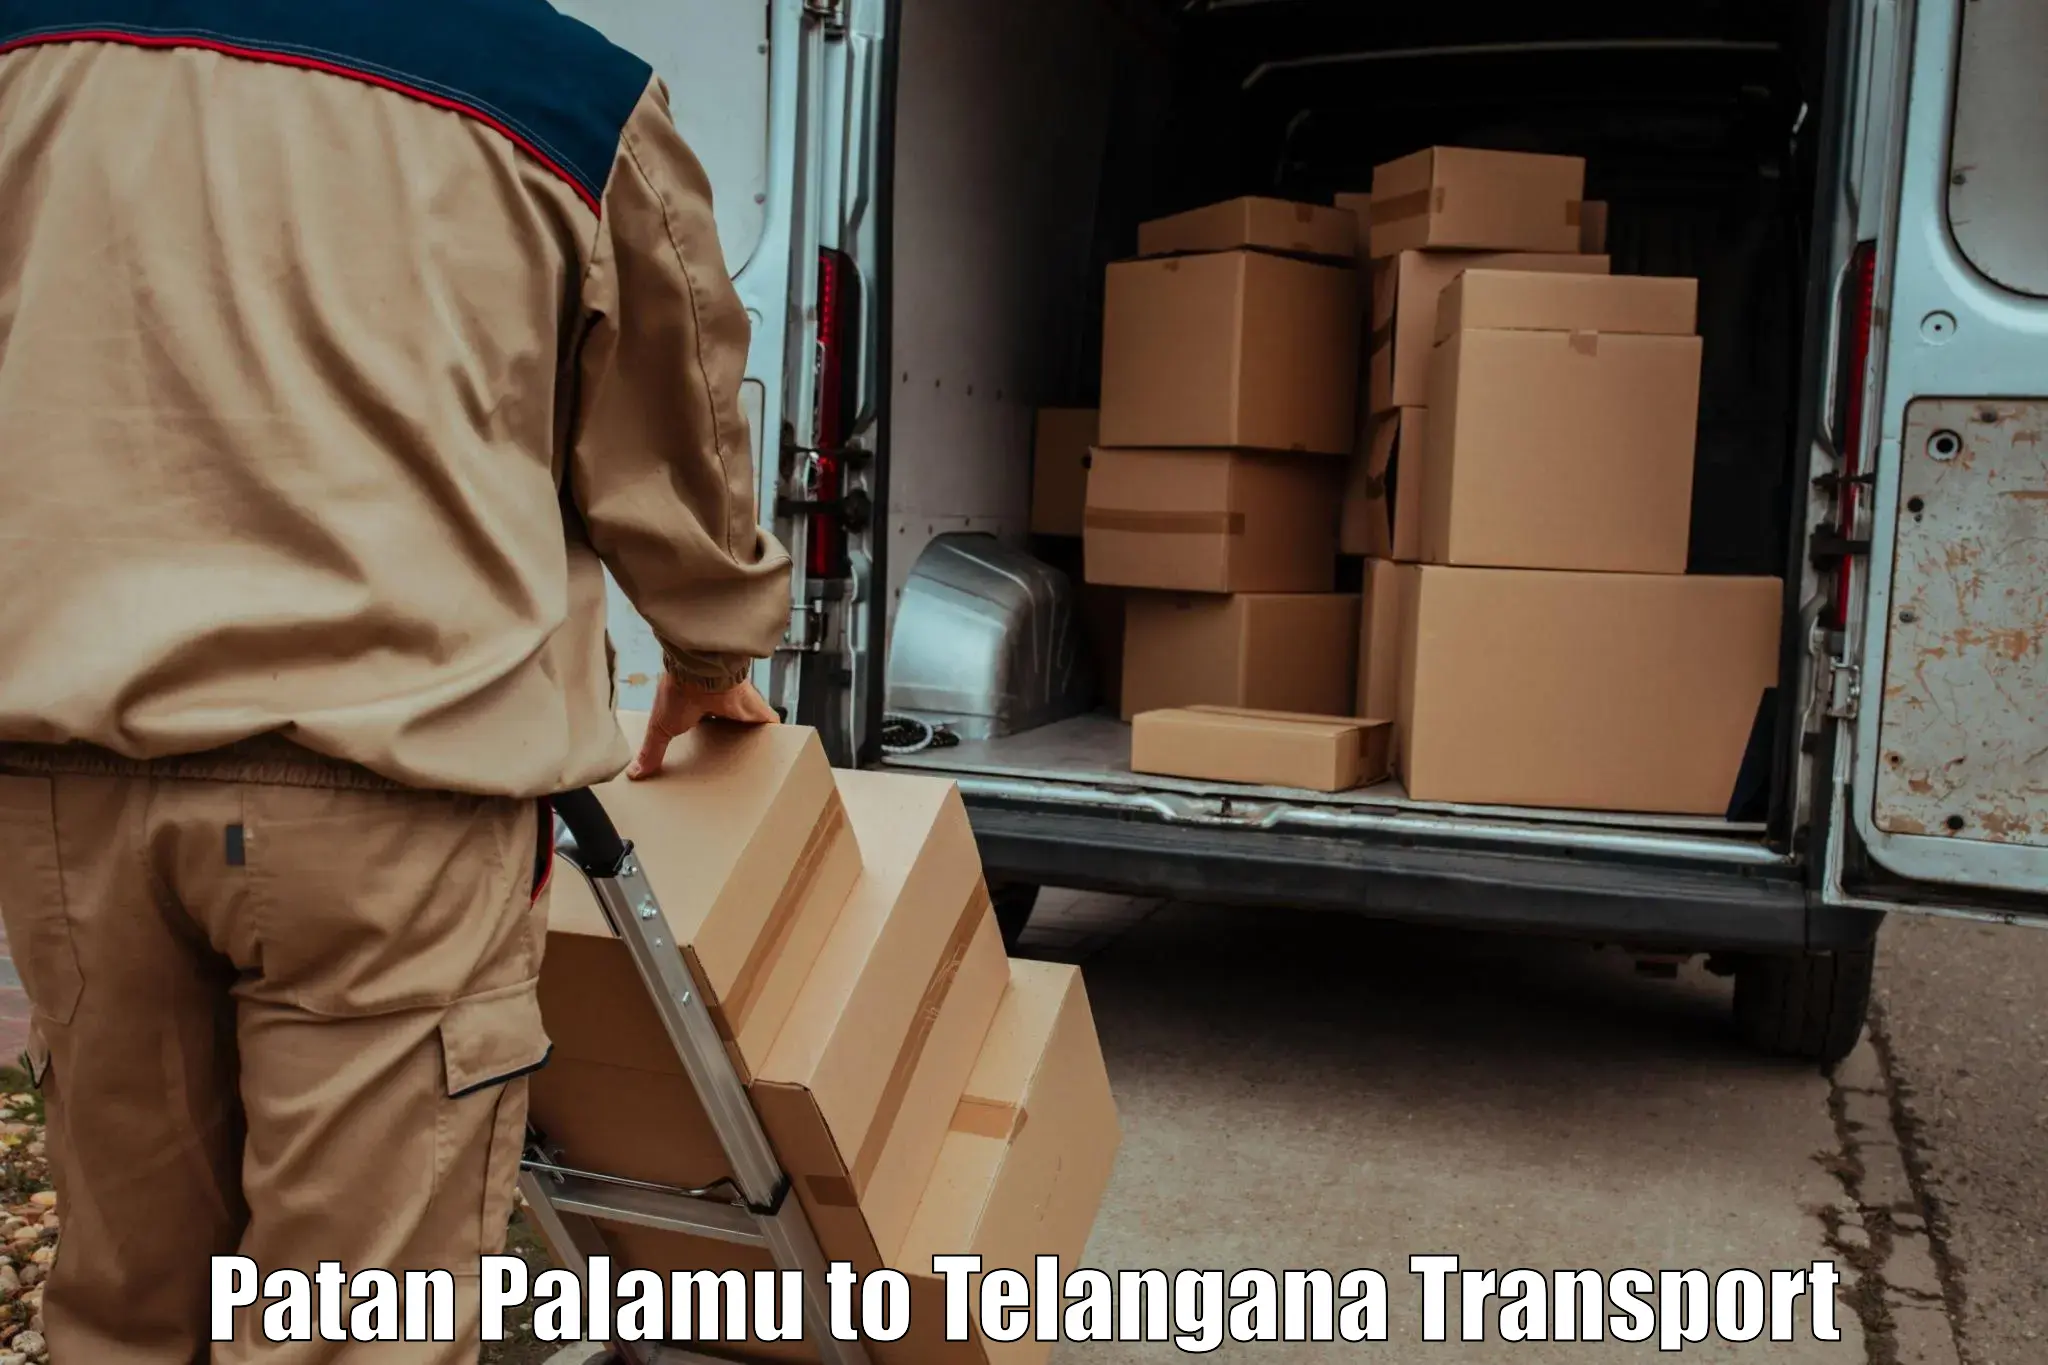 Lorry transport service Patan Palamu to Bellal Tarafa Bodhan